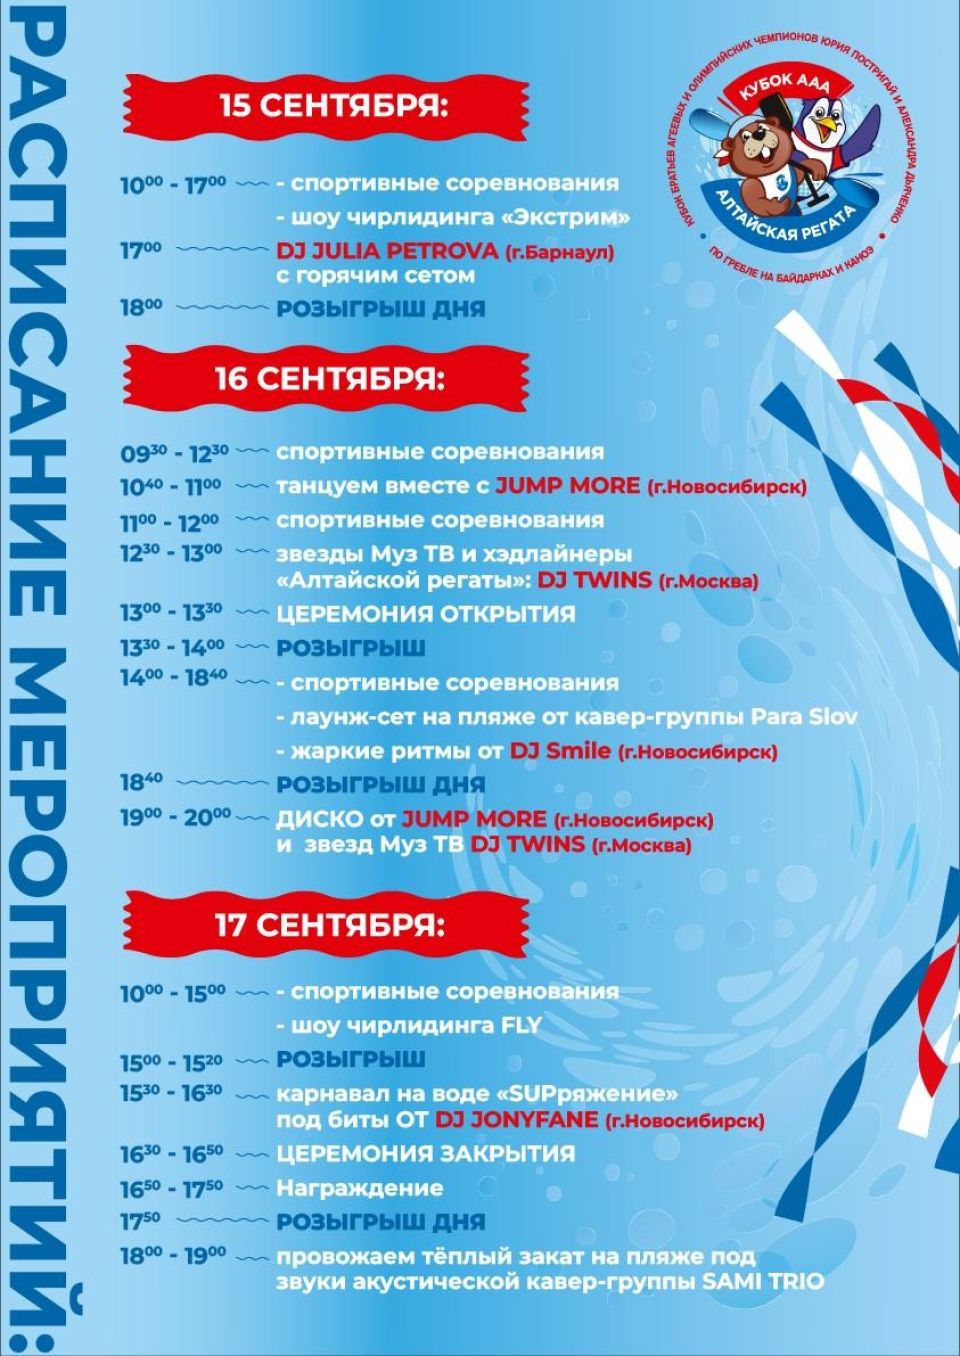 Расписание мероприятий "Алтайской регаты"